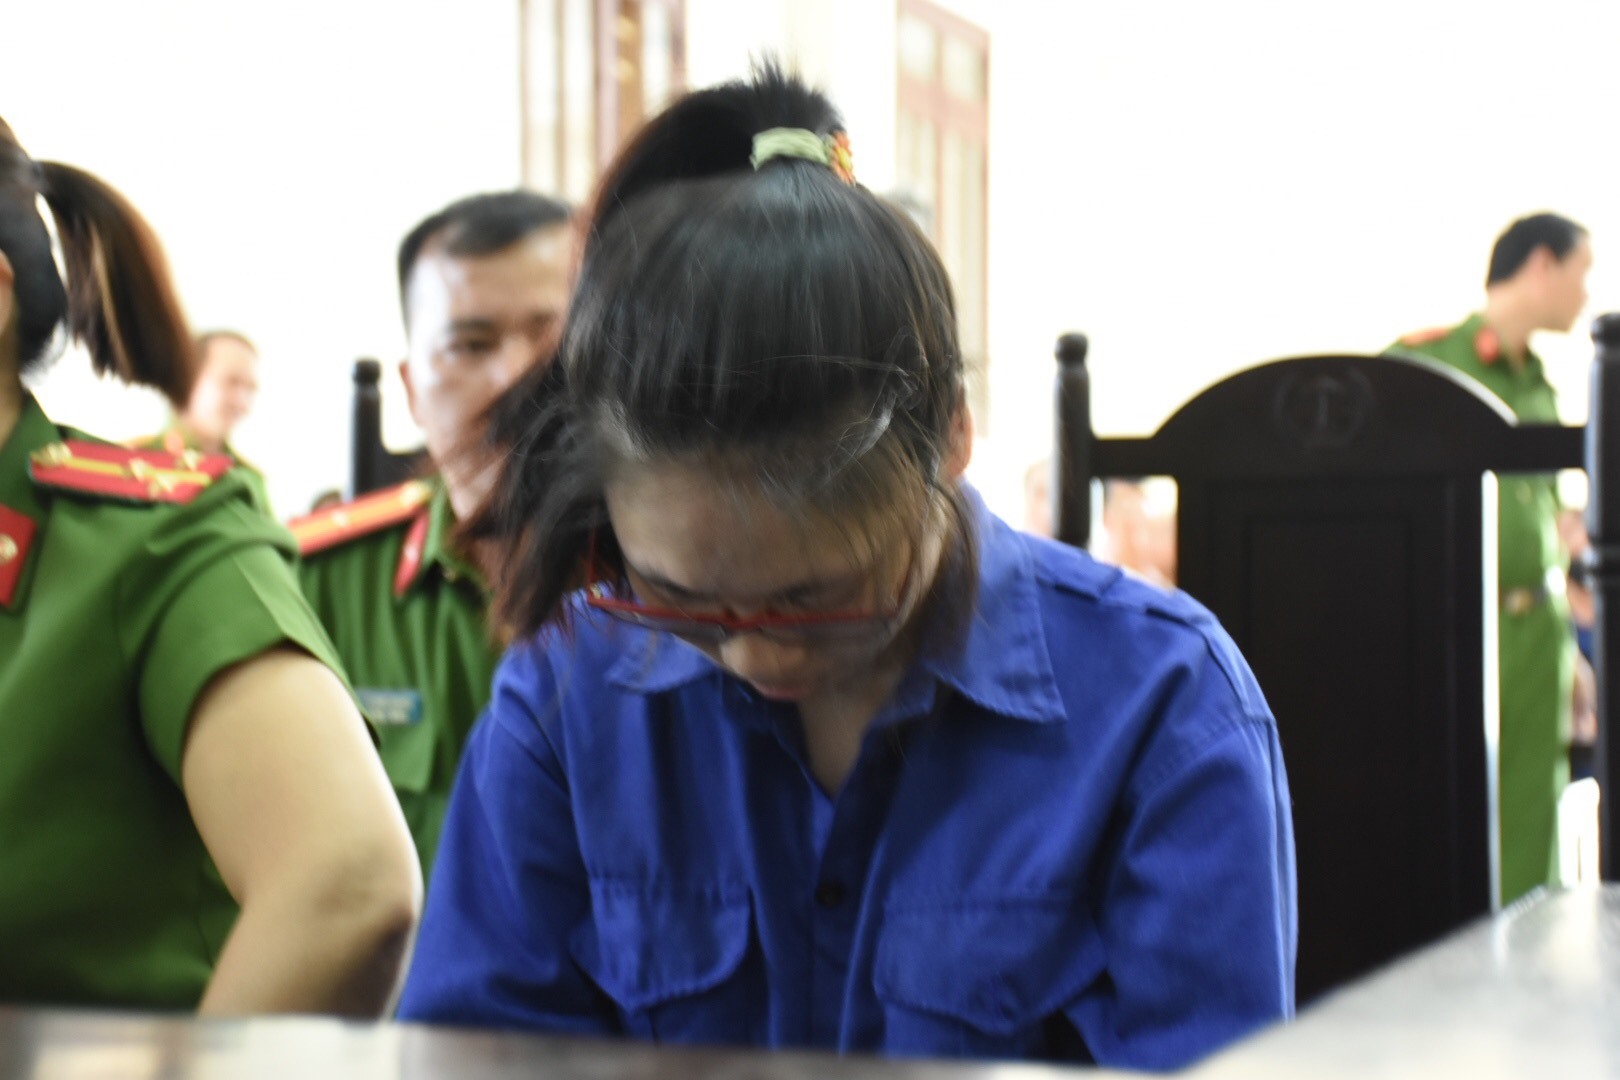 Trong vụ án này, bị cáo Lại Thị Kiều Trang được xác định có mối quan hệ tình cảm với chồng của chị họ. Do ghen tuông đã nảy sinh ý định dùng 2 lọ hoá chất Natri Xyanua đã mua từ trước, đầu độc giết chết chị họ hòng qua lại với anh rể tự do. Ảnh ĐL